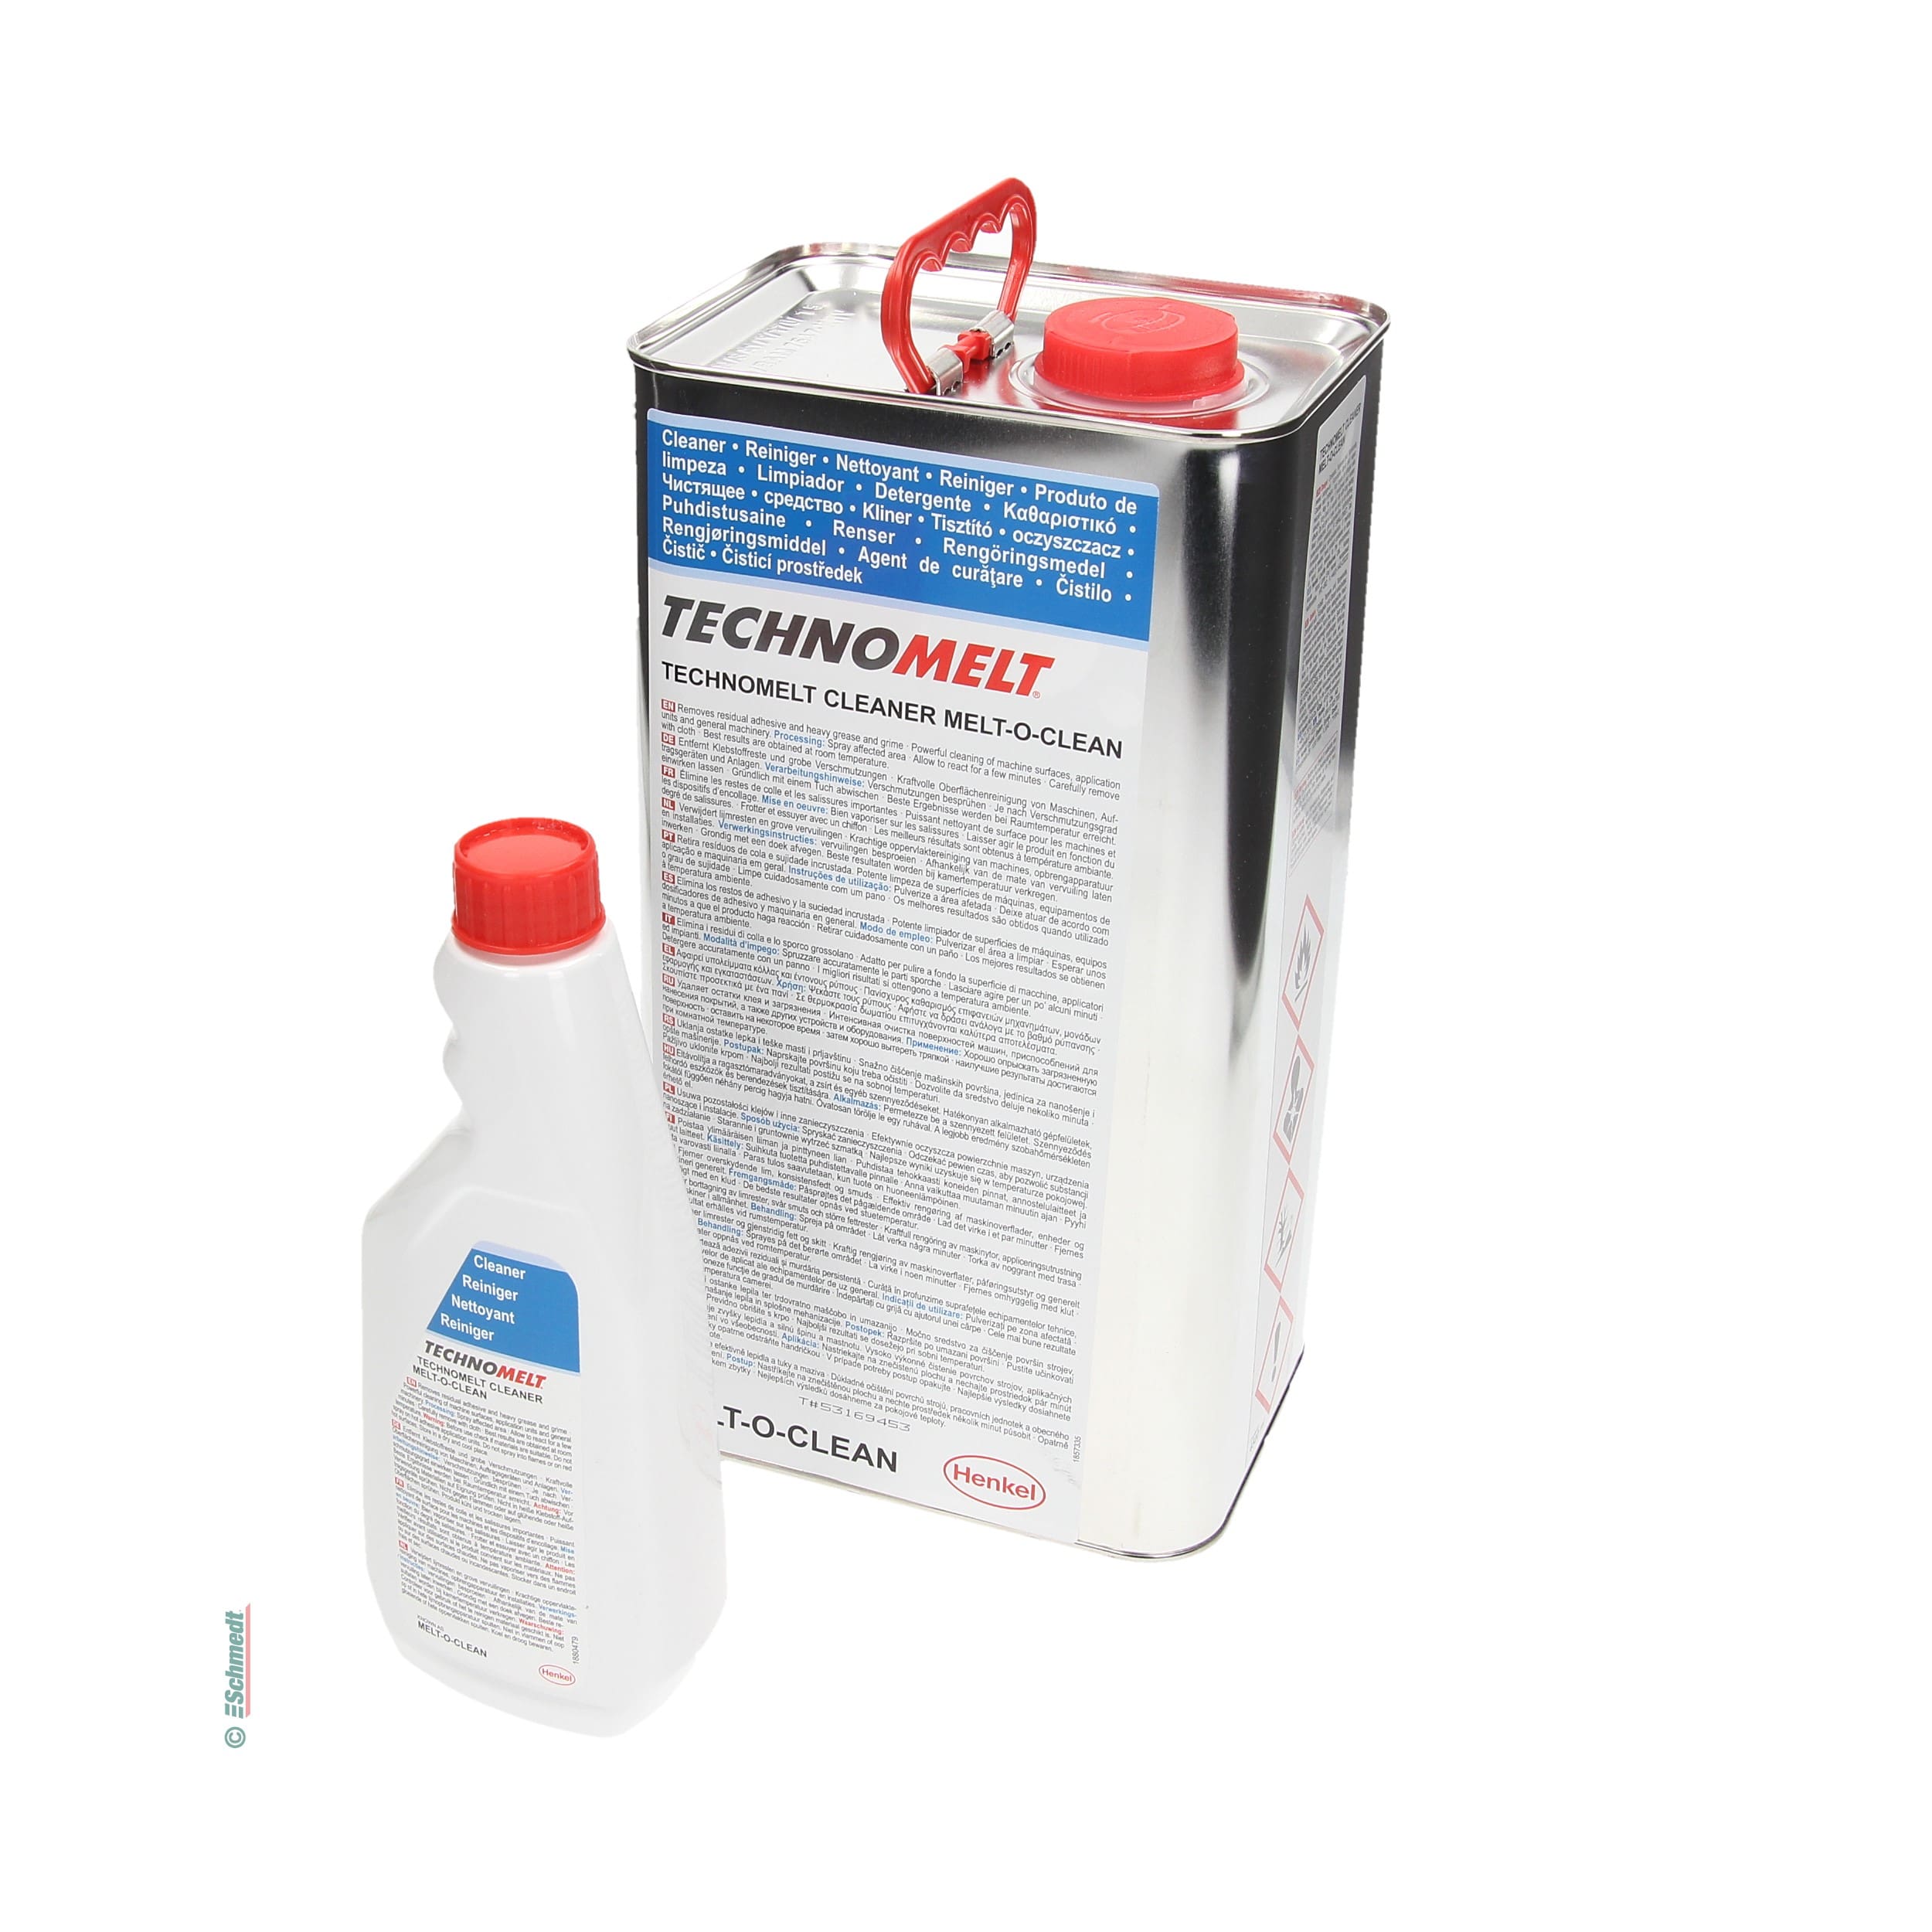 Melt-O-Clean - Kaltreiniger - zum Entfernen von hartnäckigen und schwer entfernbaren Verunreinigungen, insbesondere von Dispersions- und Hot...